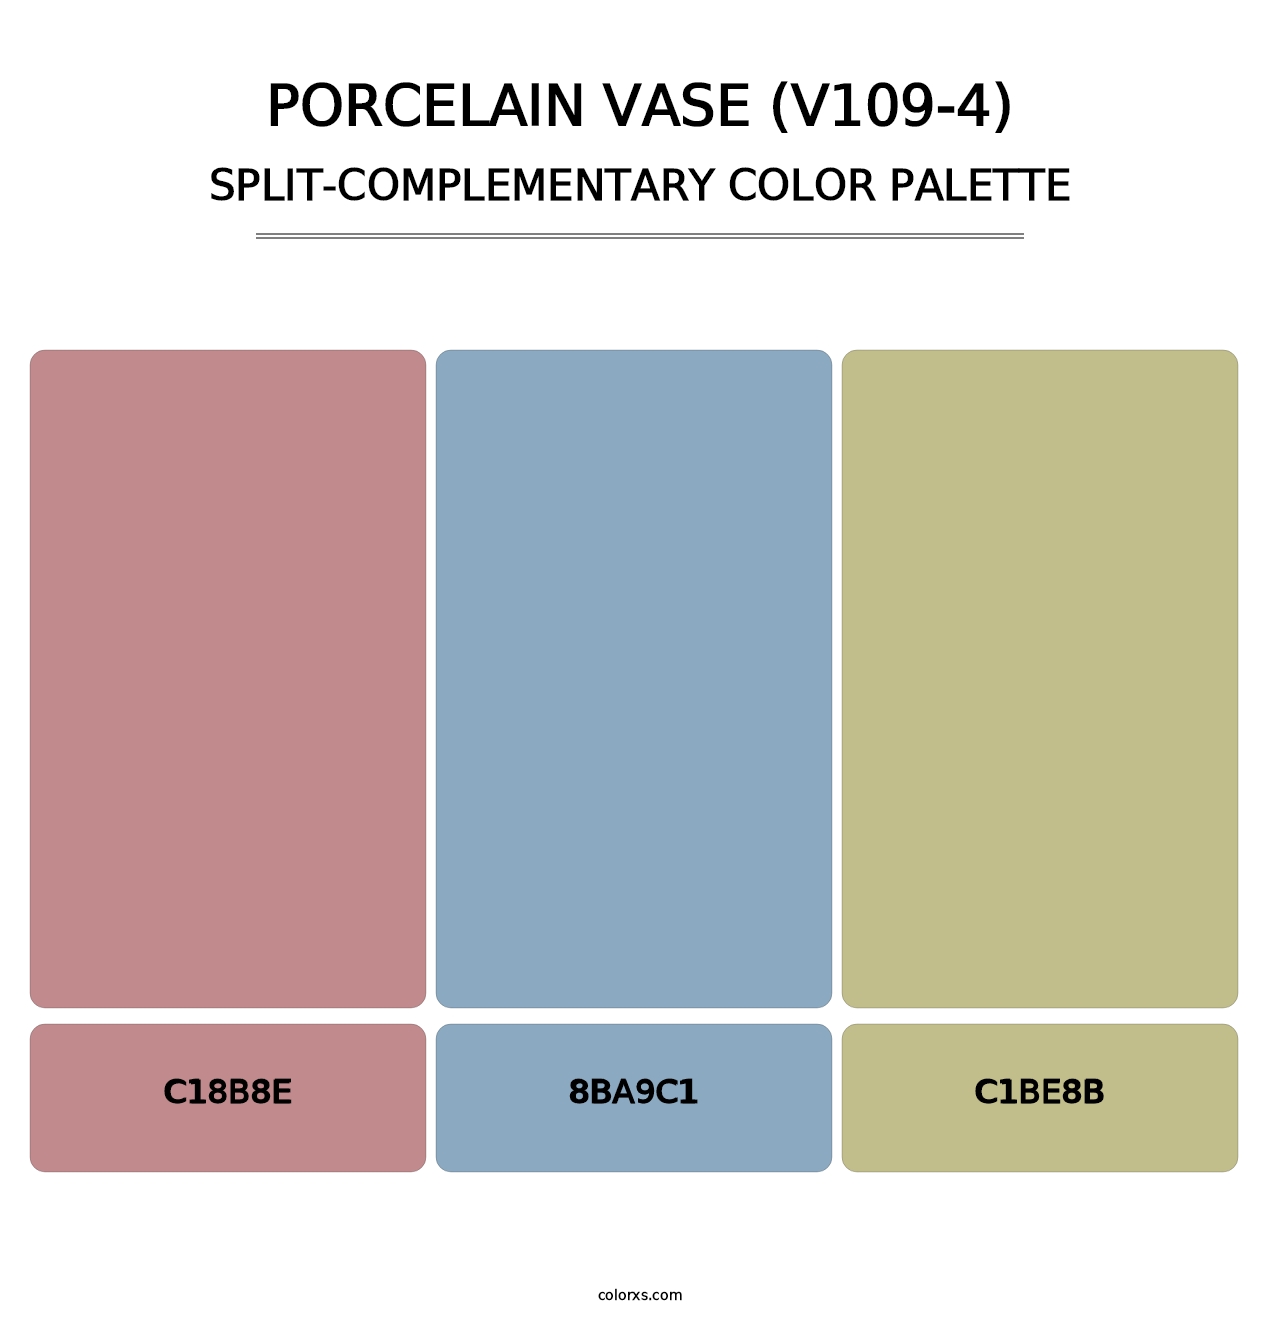 Porcelain Vase (V109-4) - Split-Complementary Color Palette